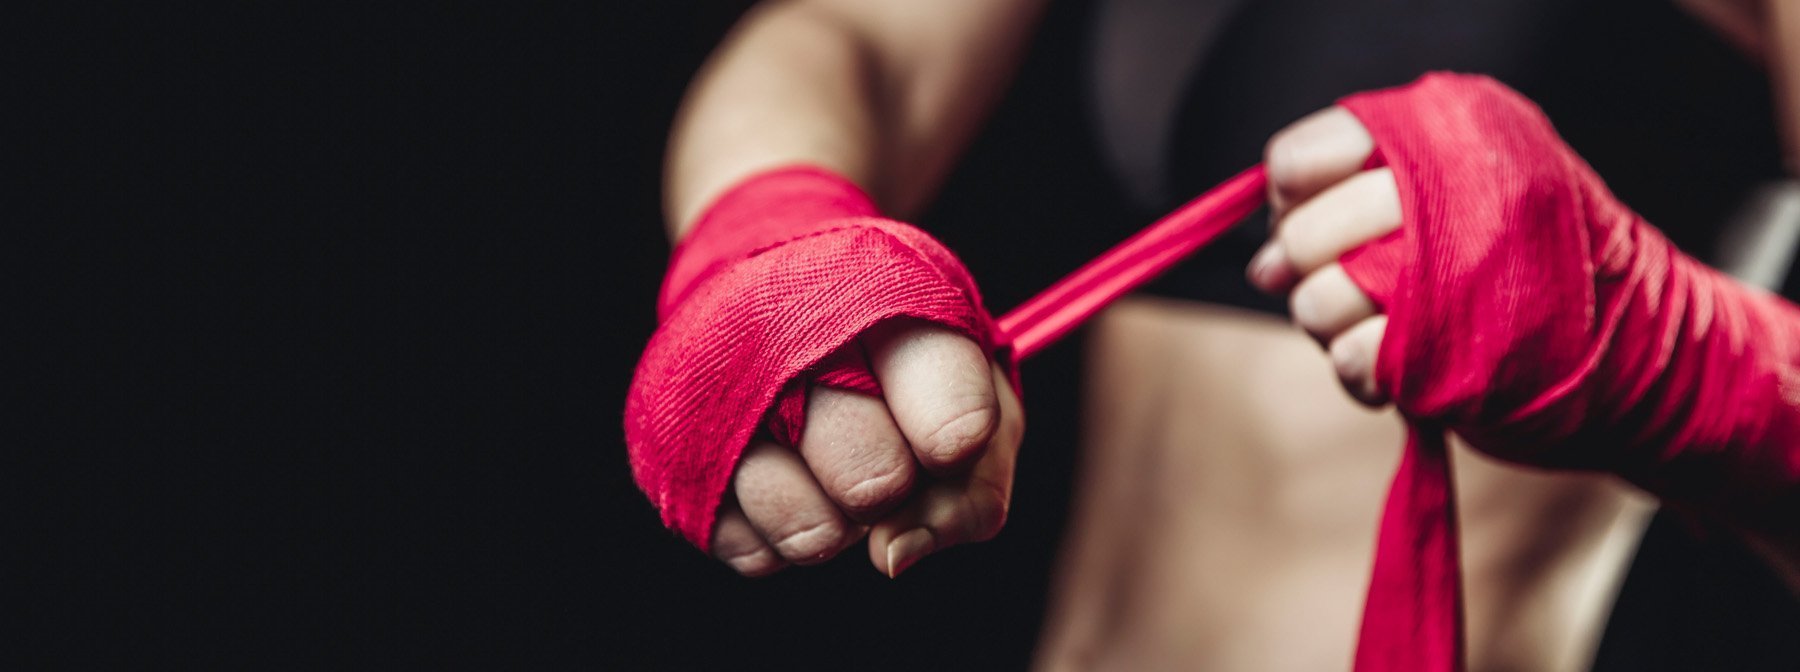 Trainiere wie ein MMA-Kämpfer | Athleten Guide